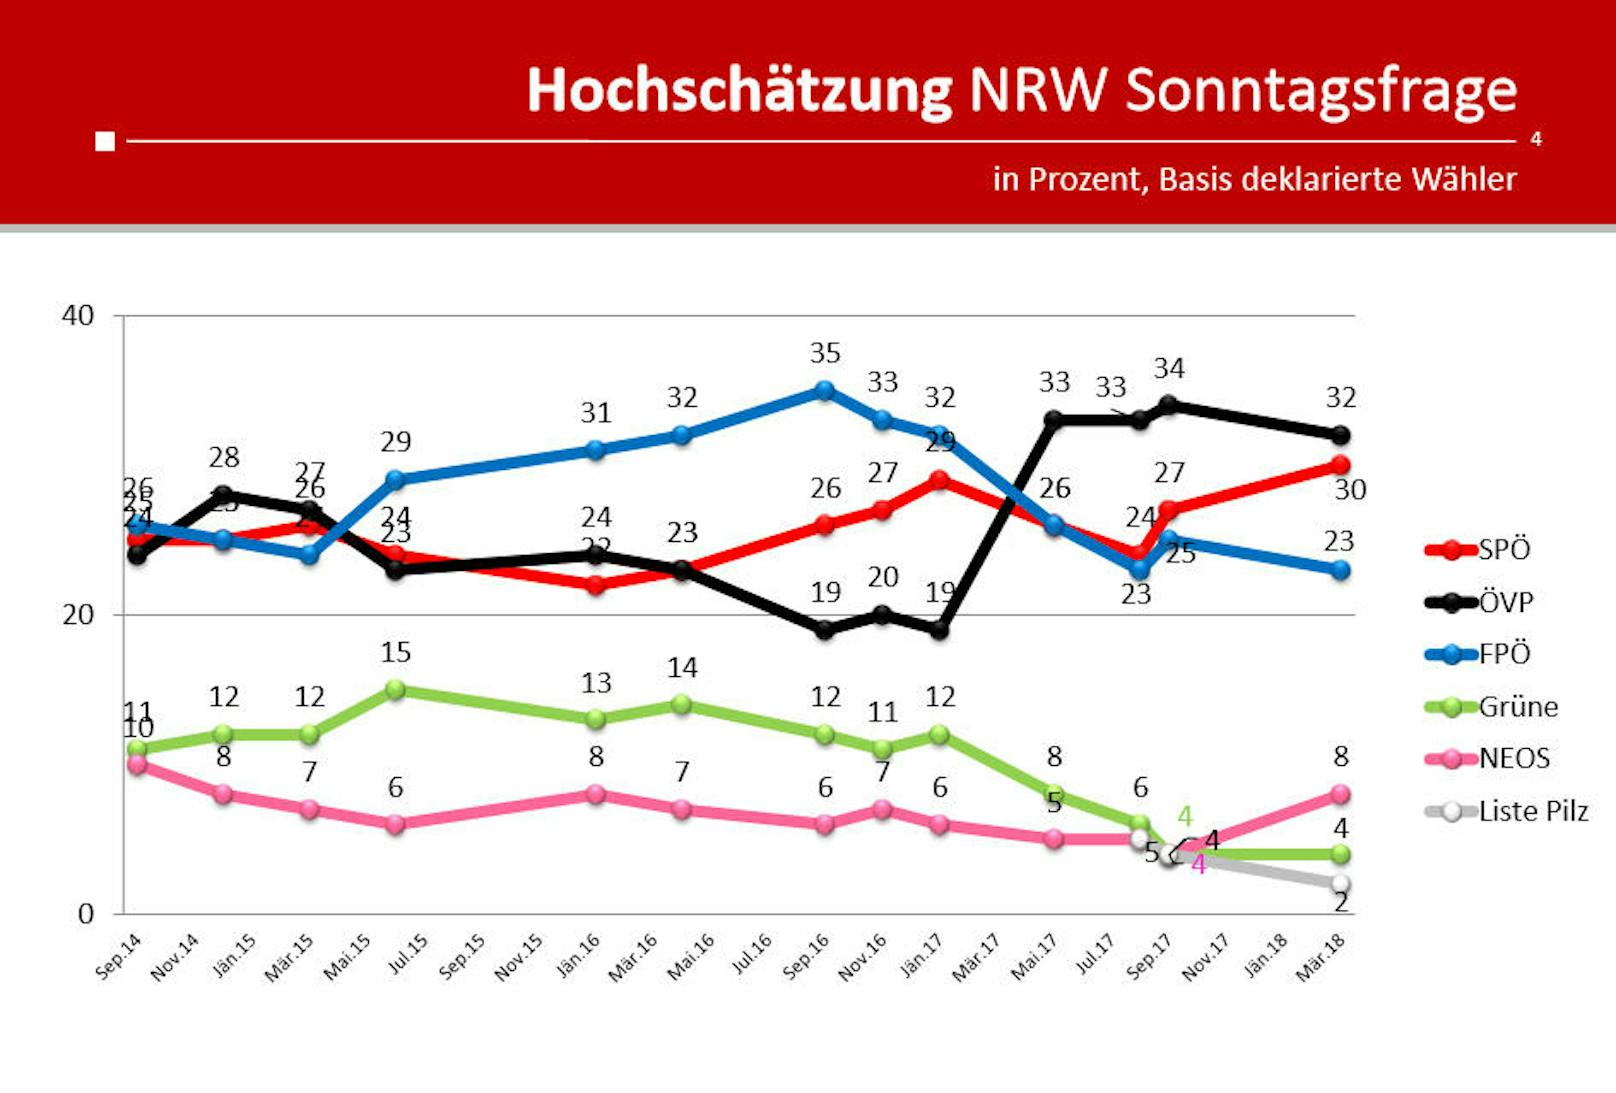 Während die SPÖ bei der Sonntagsfrage wieder etwas Rückenwind hat, schwächelt die FPÖ. Ein langfristiger Trend lässt sich davon allerdings nicht ableiten.